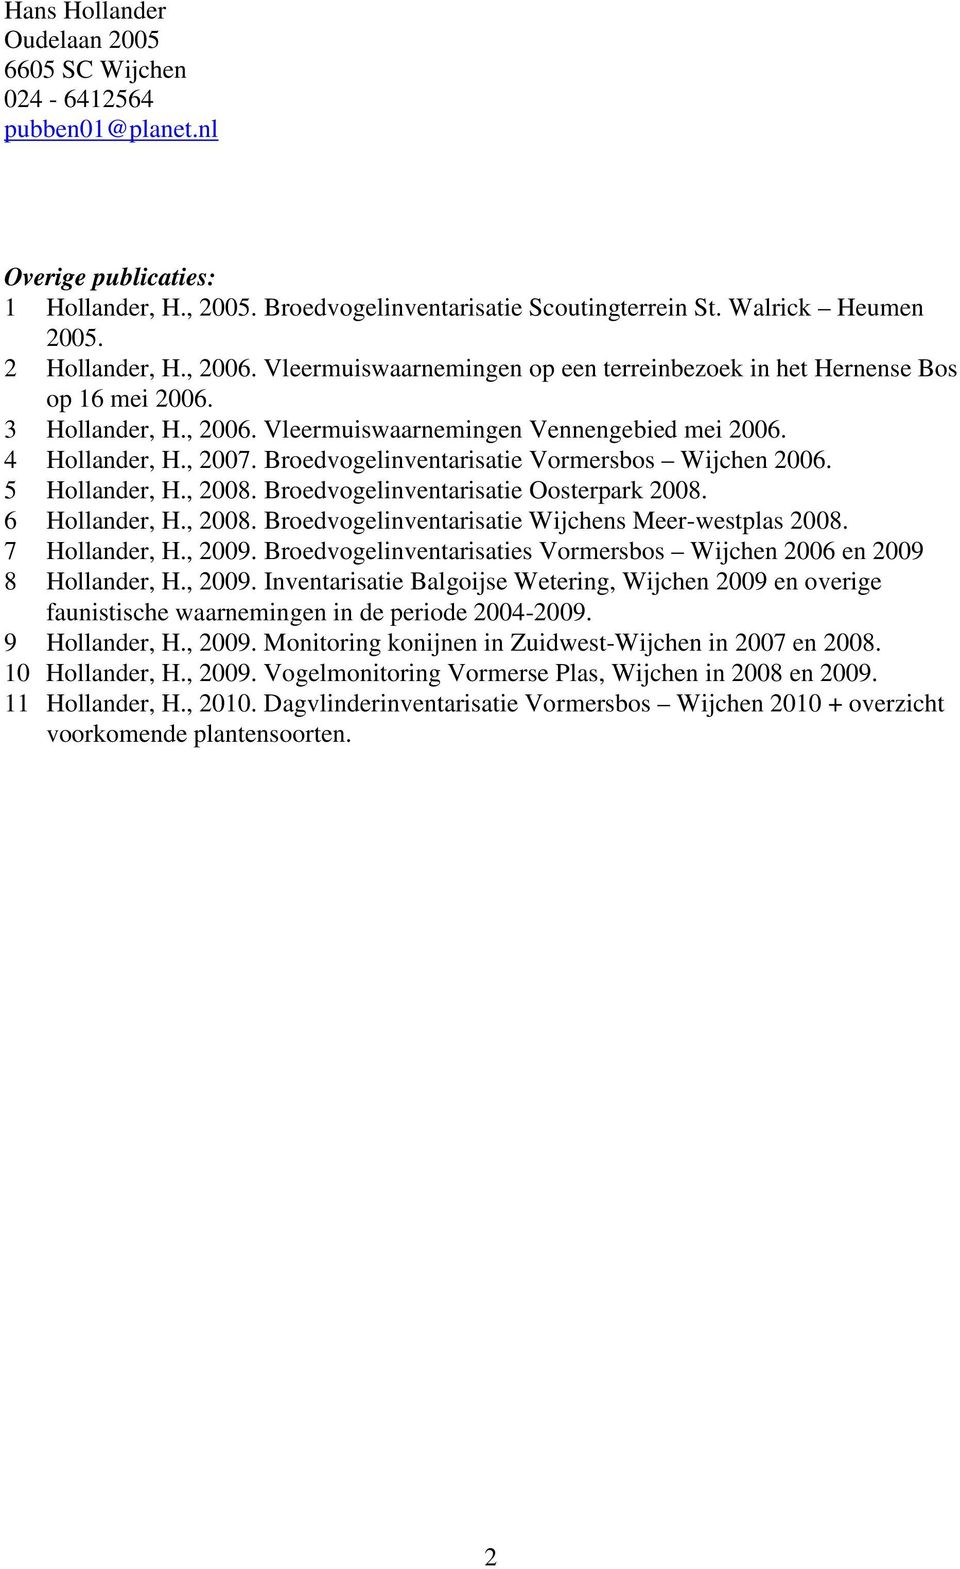 Broedvogelinventarisatie Vormersbos Wijchen 2006. 5 Hollander, H., 2008. Broedvogelinventarisatie Oosterpark 2008. 6 Hollander, H., 2008. Broedvogelinventarisatie Wijchens Meer-westplas 2008.